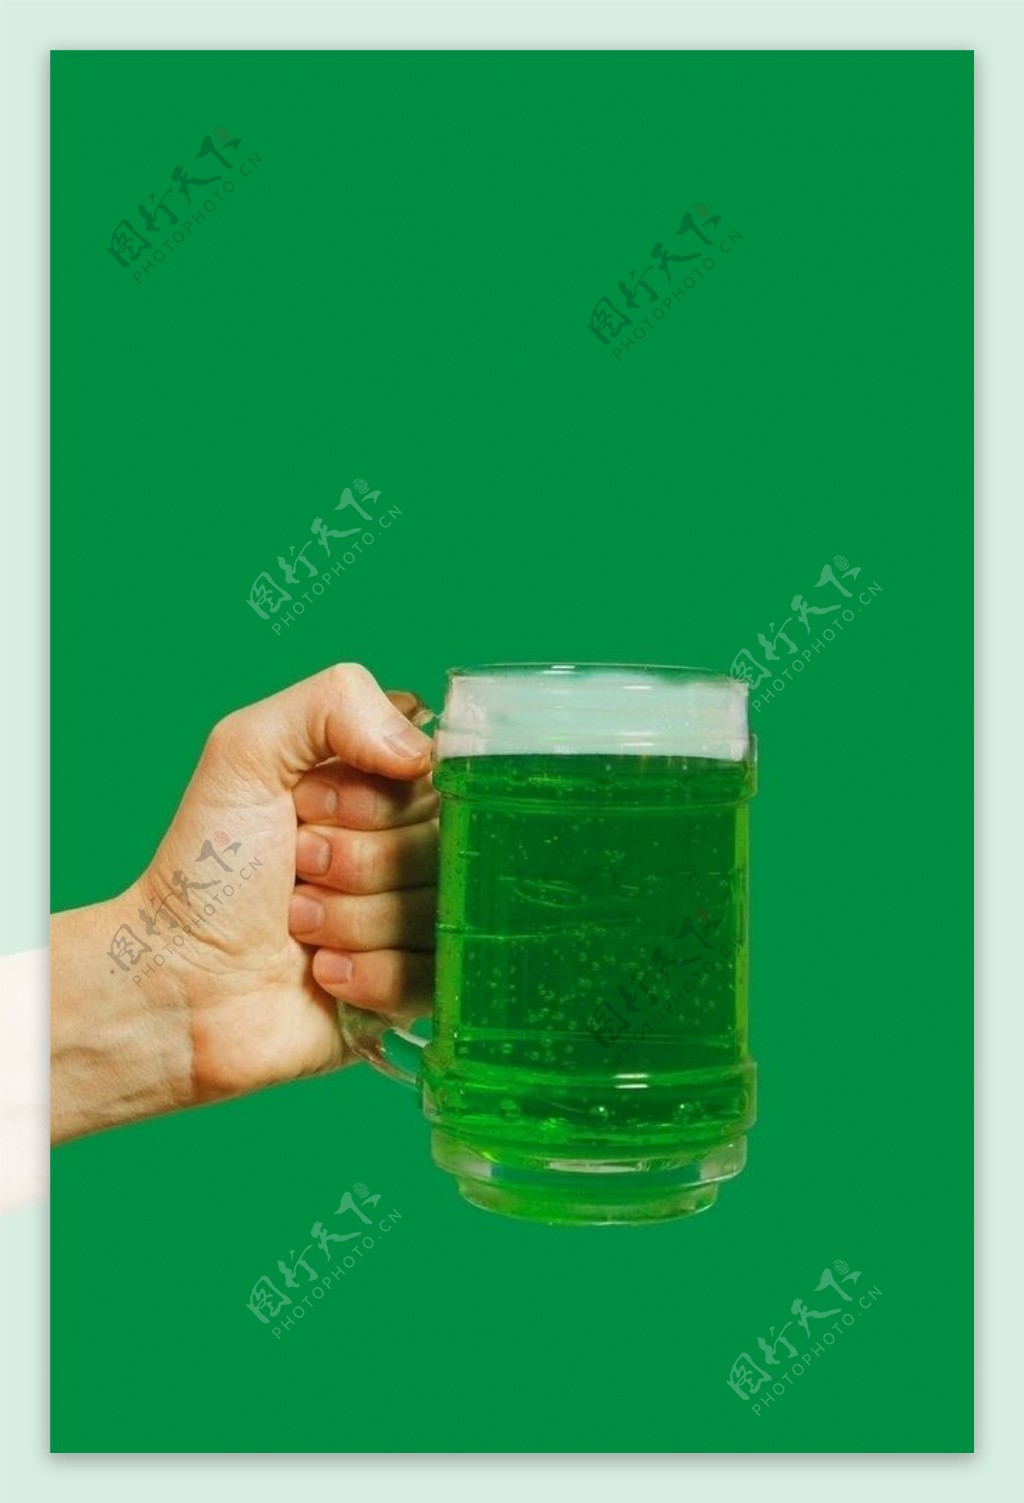 绿色杯子